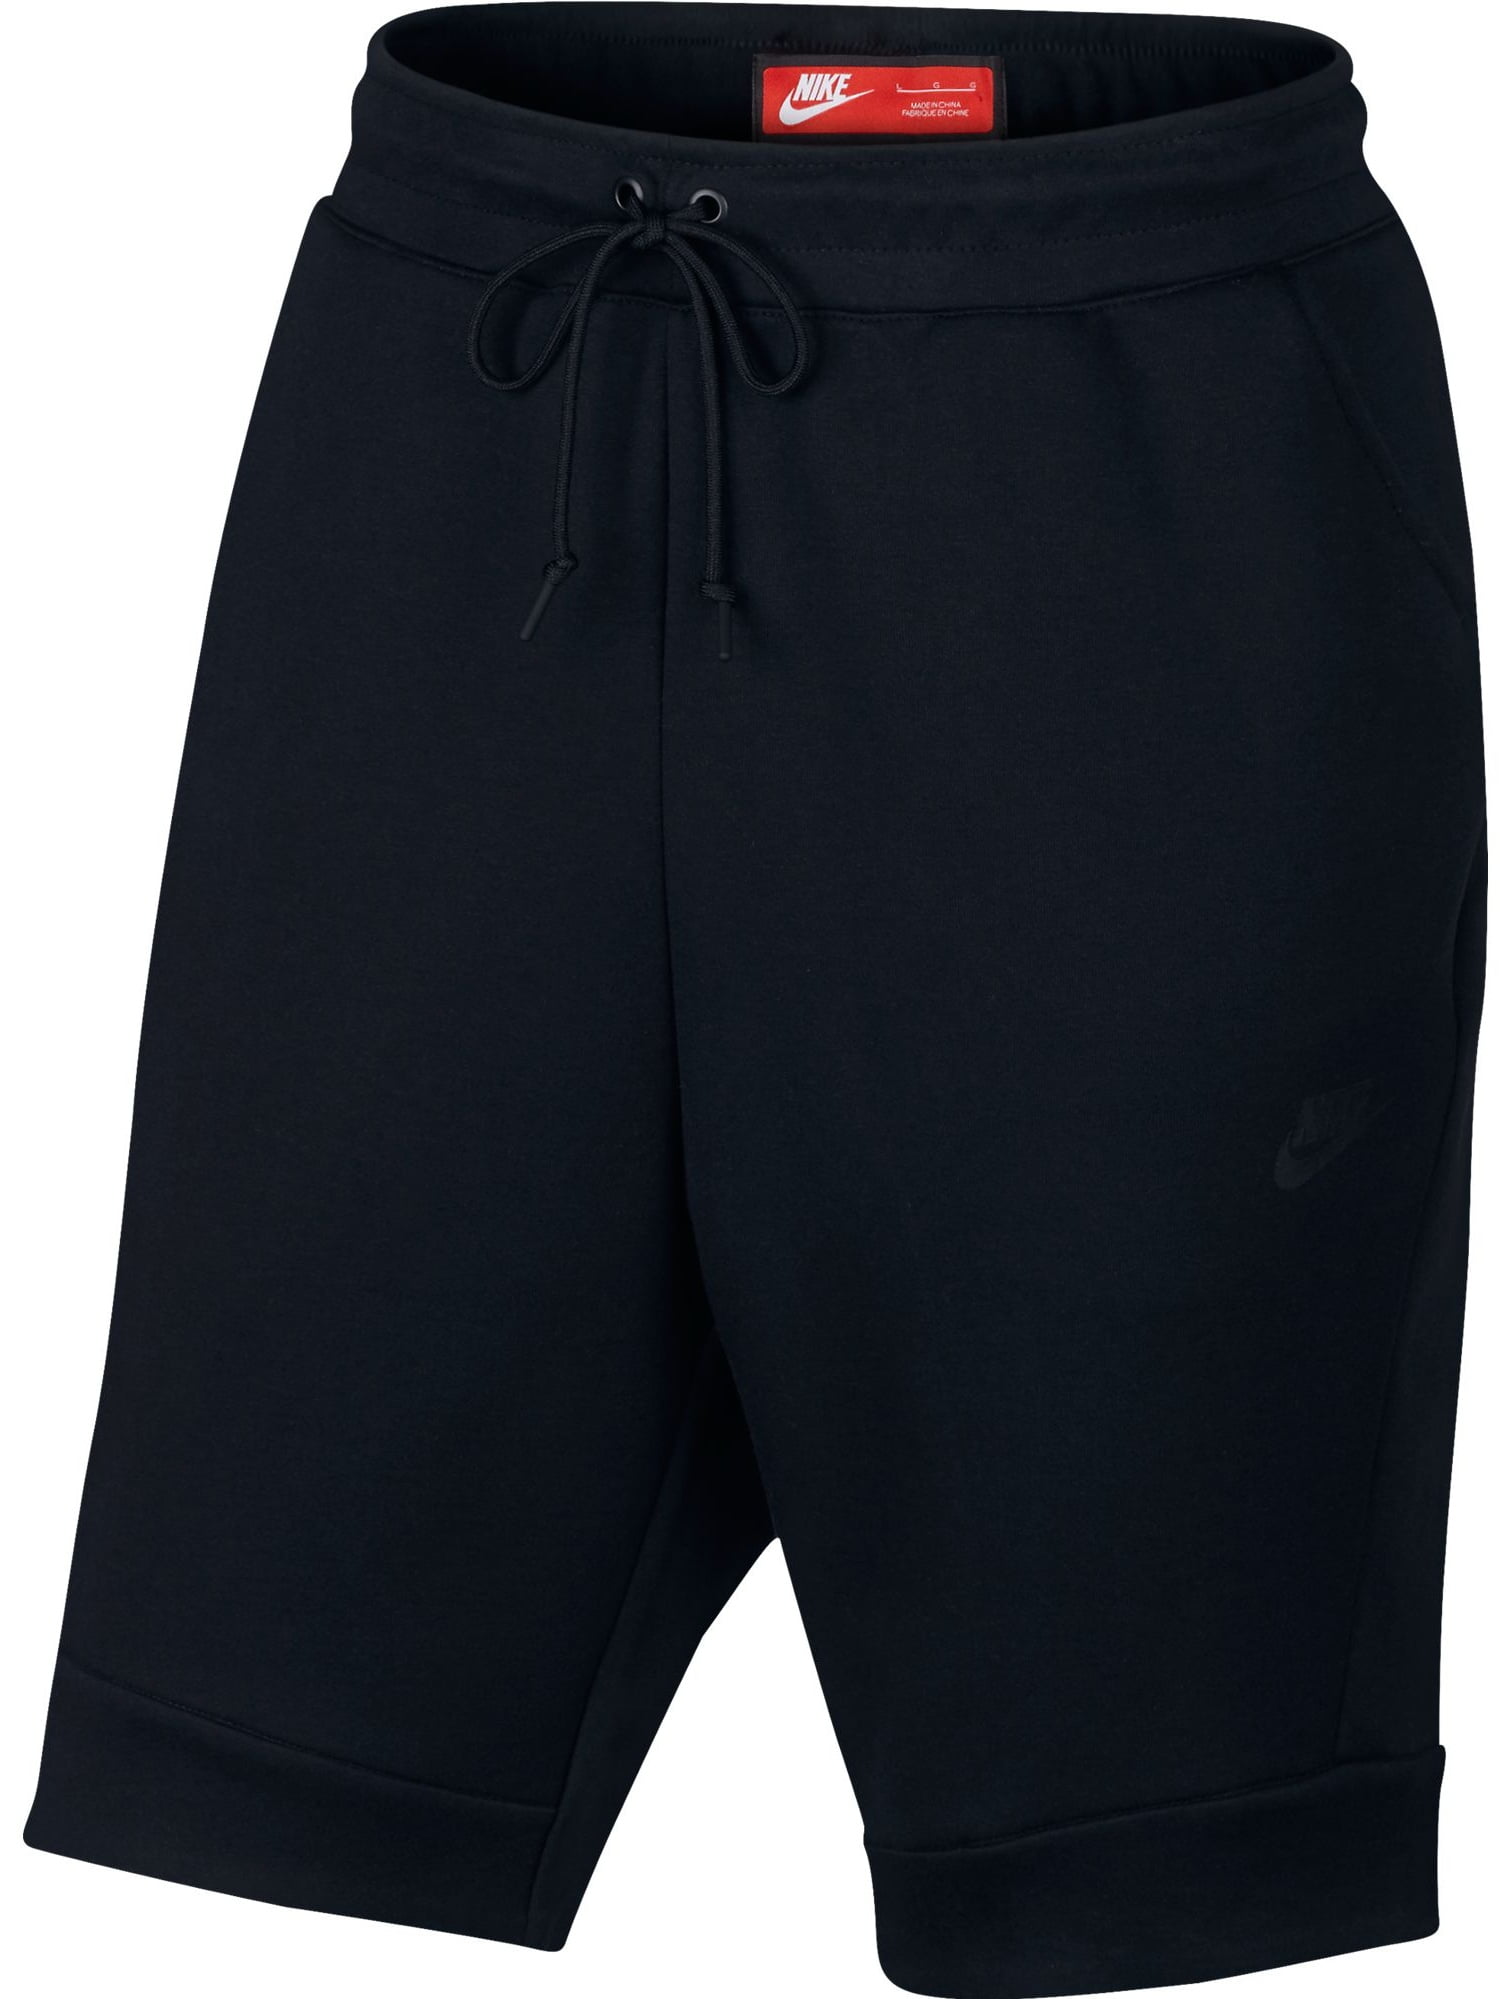 Nike Men's Sportswear Tech Fleece Shorts (Black Black, L